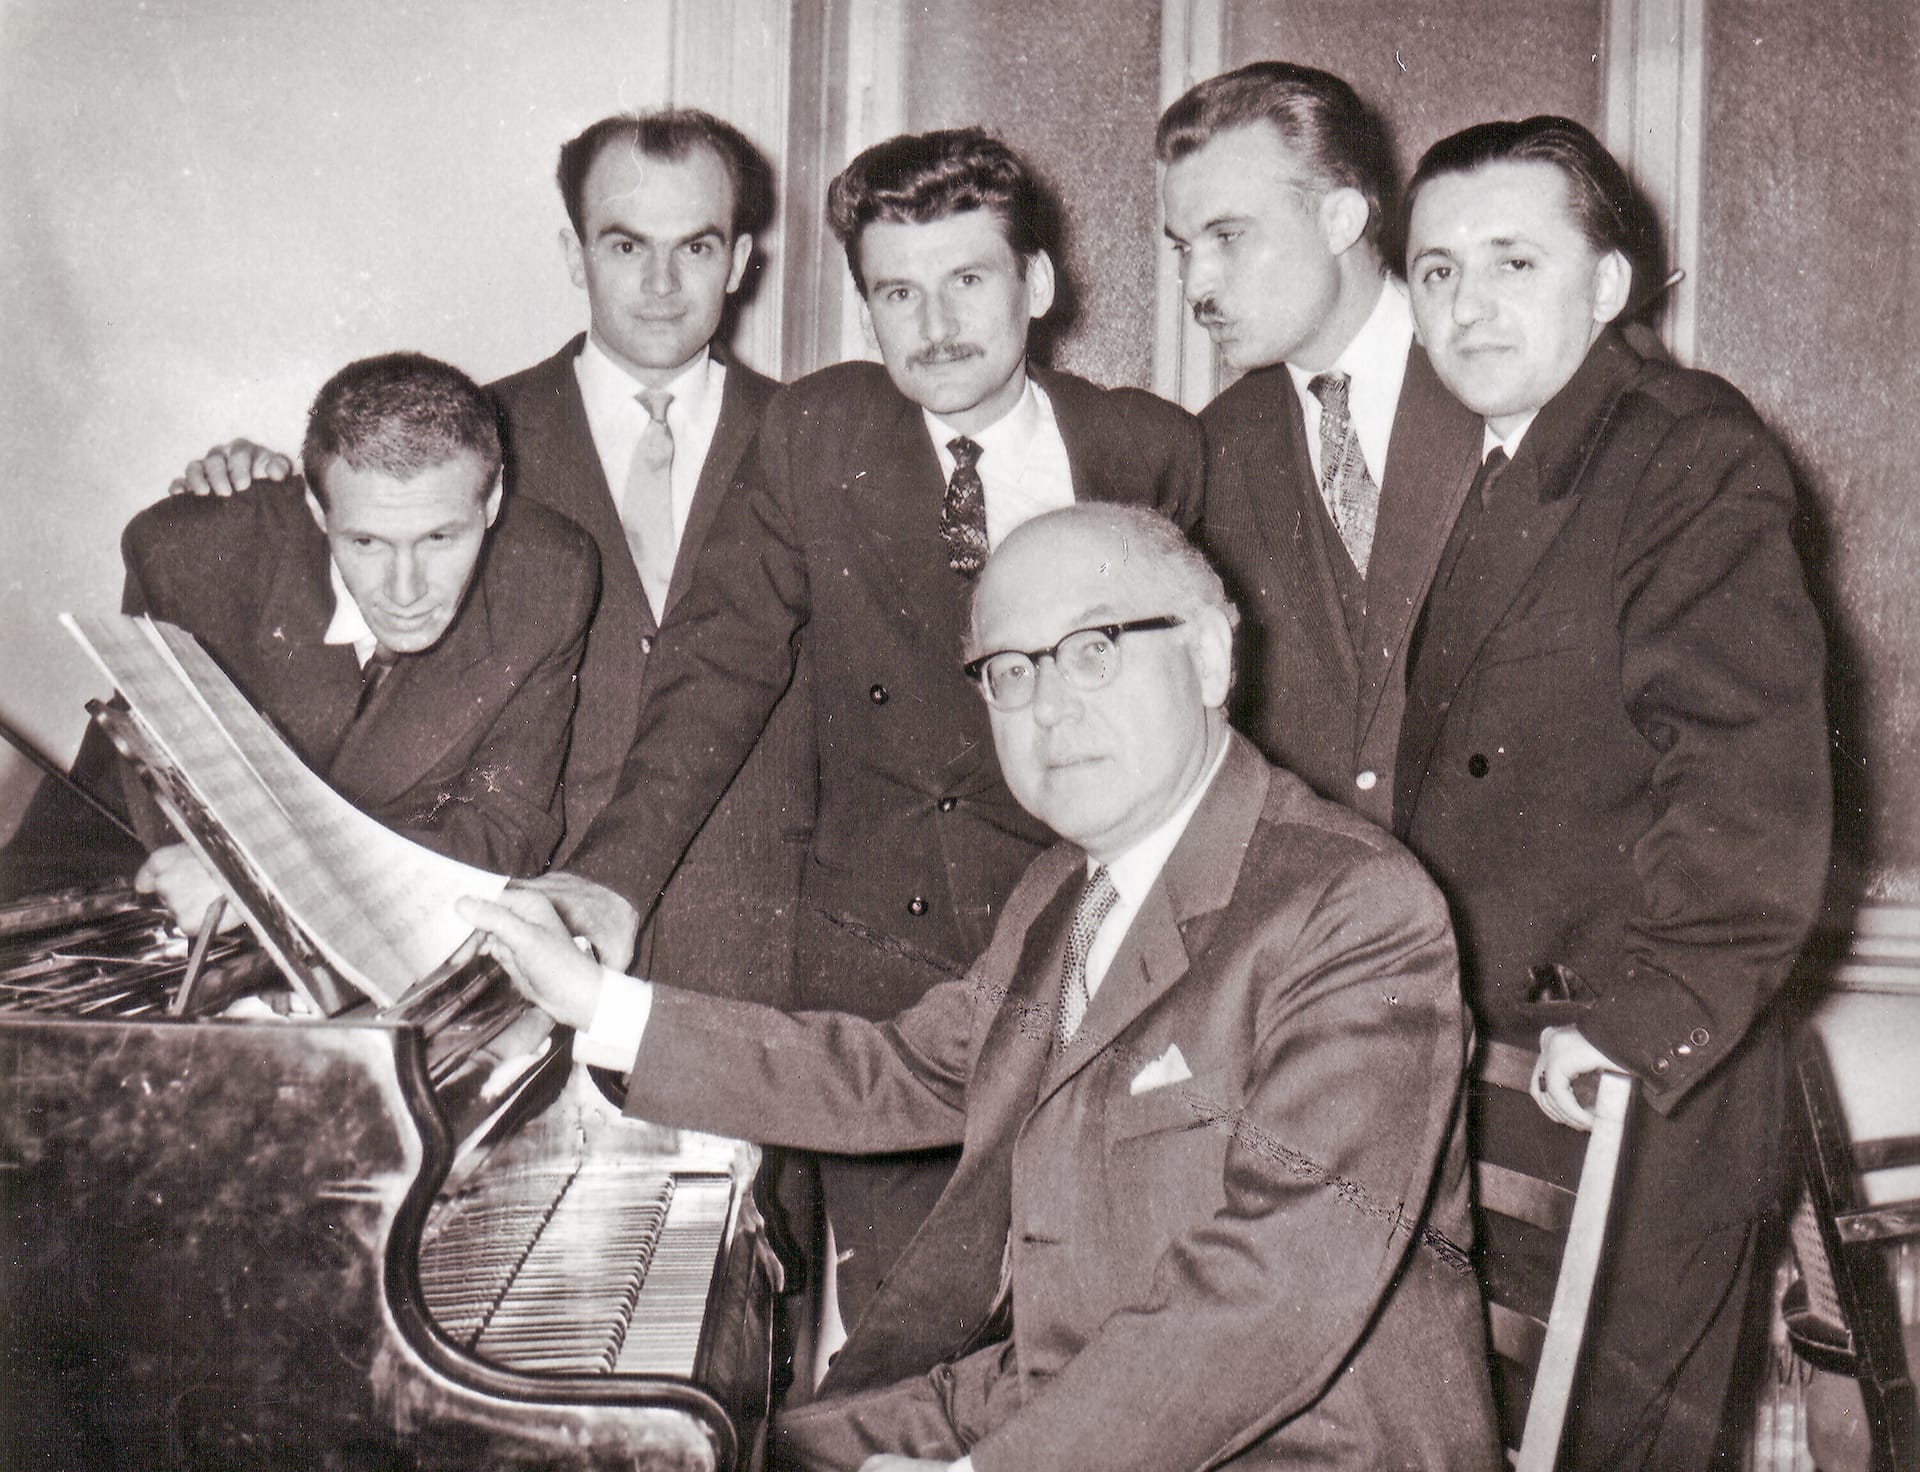 Ferenc Farkas with his students : György Kurtág, Miklós Kocsár, Emil Petrovics, Lajos Vass, Sándor Szokolay (1962)